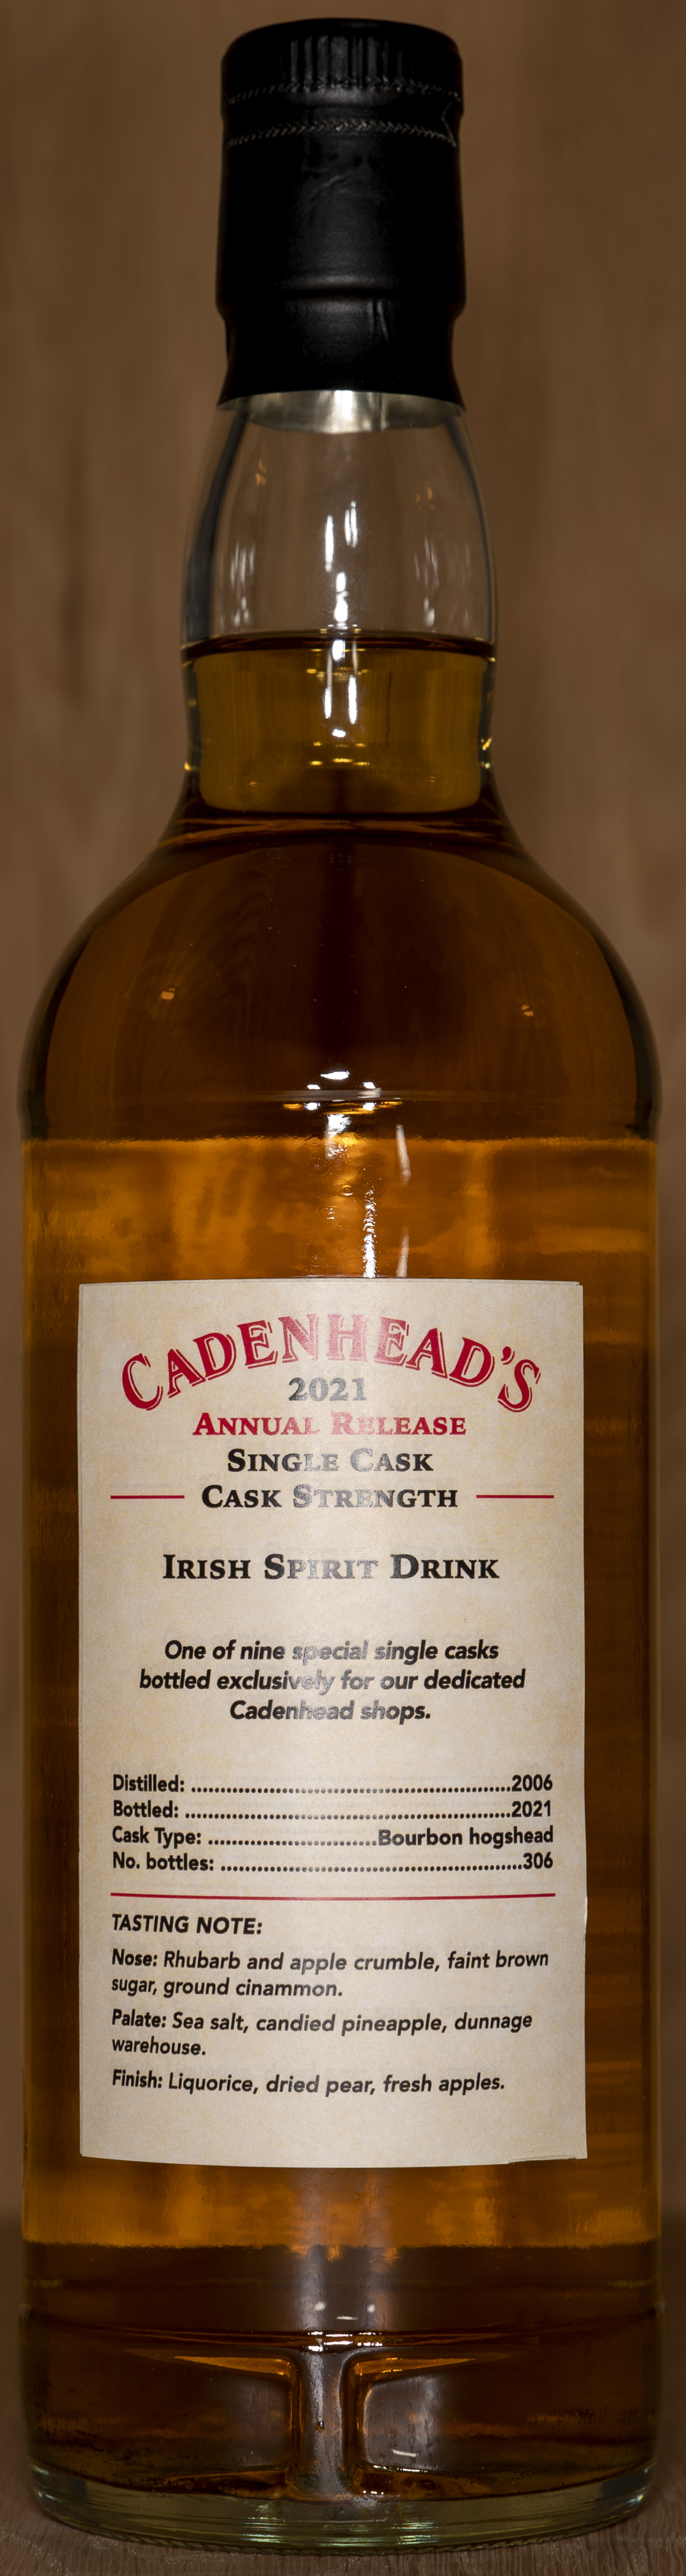 Billede: DSC_5001 - Cadenheads Whisky Shop Milan - Irish Spirit Drink 15 years - bottle back.jpg